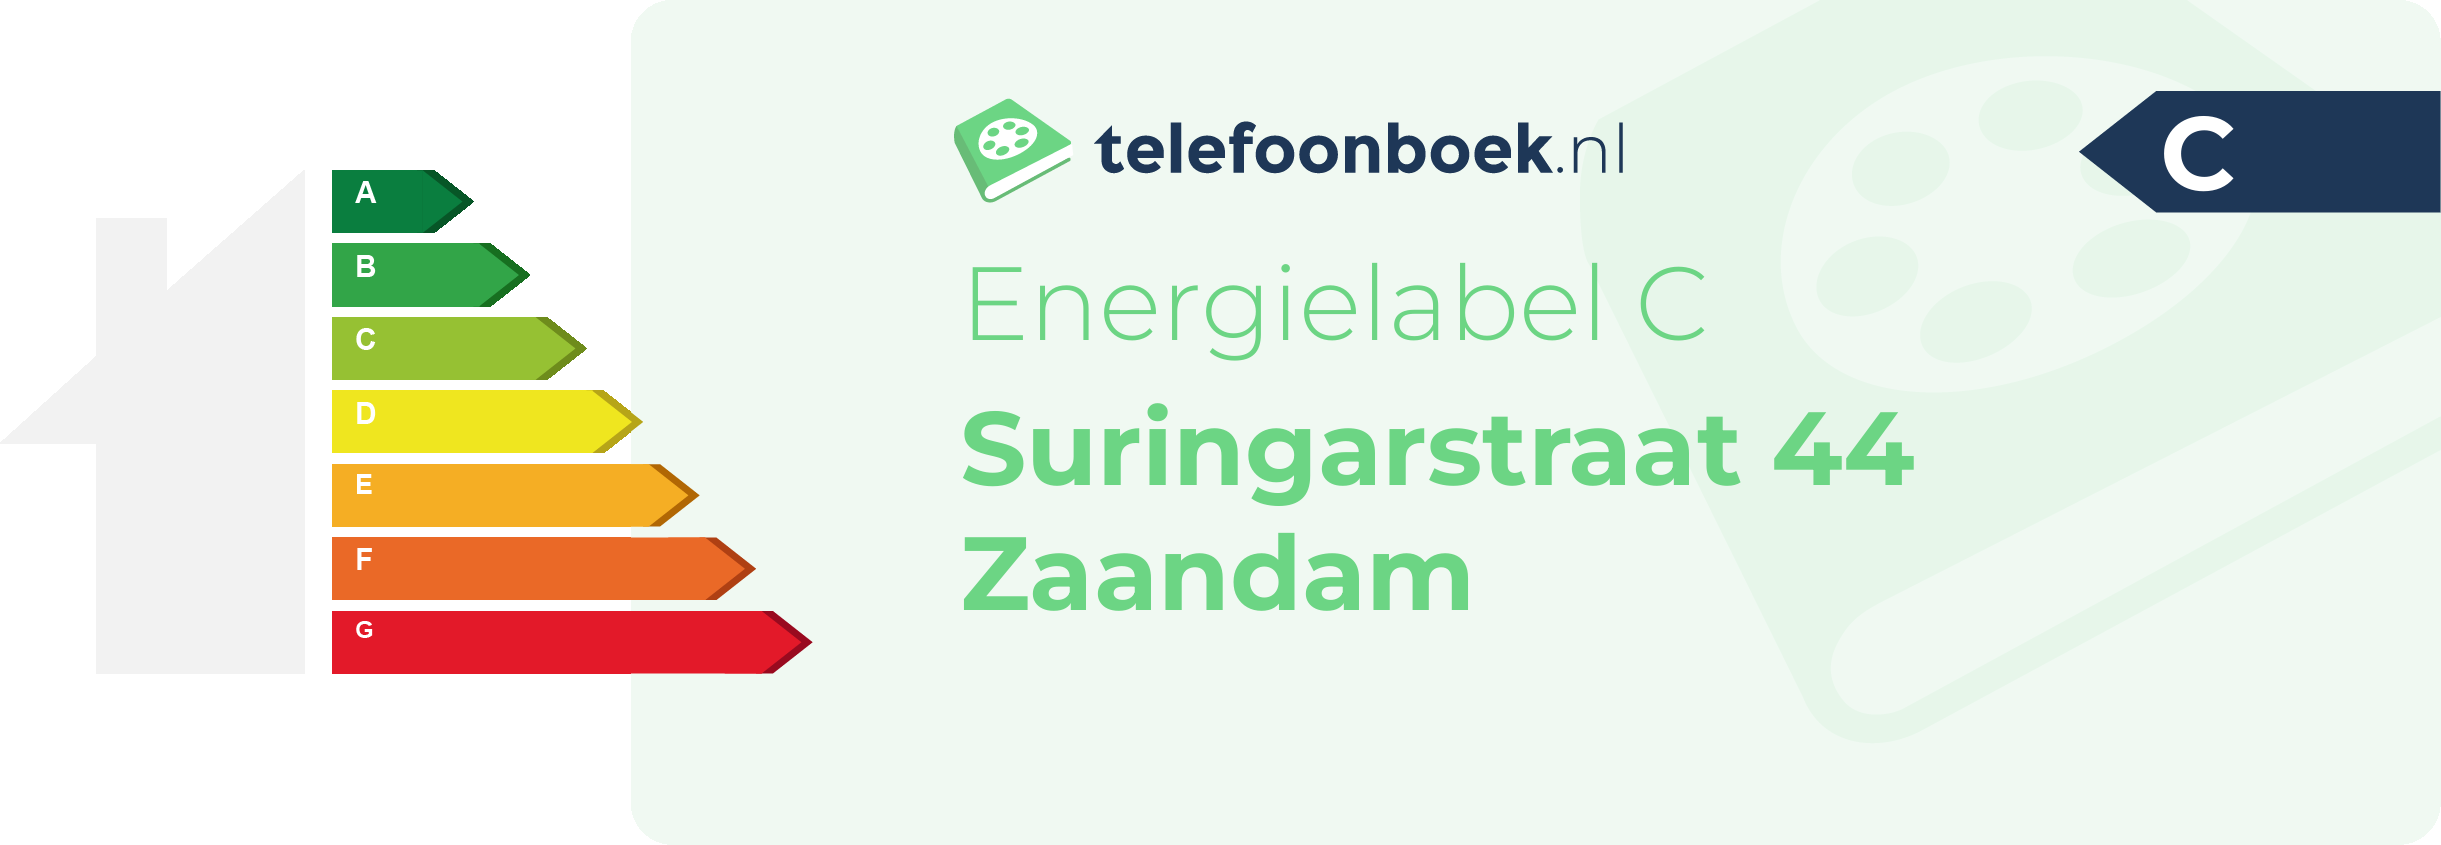 Energielabel Suringarstraat 44 Zaandam